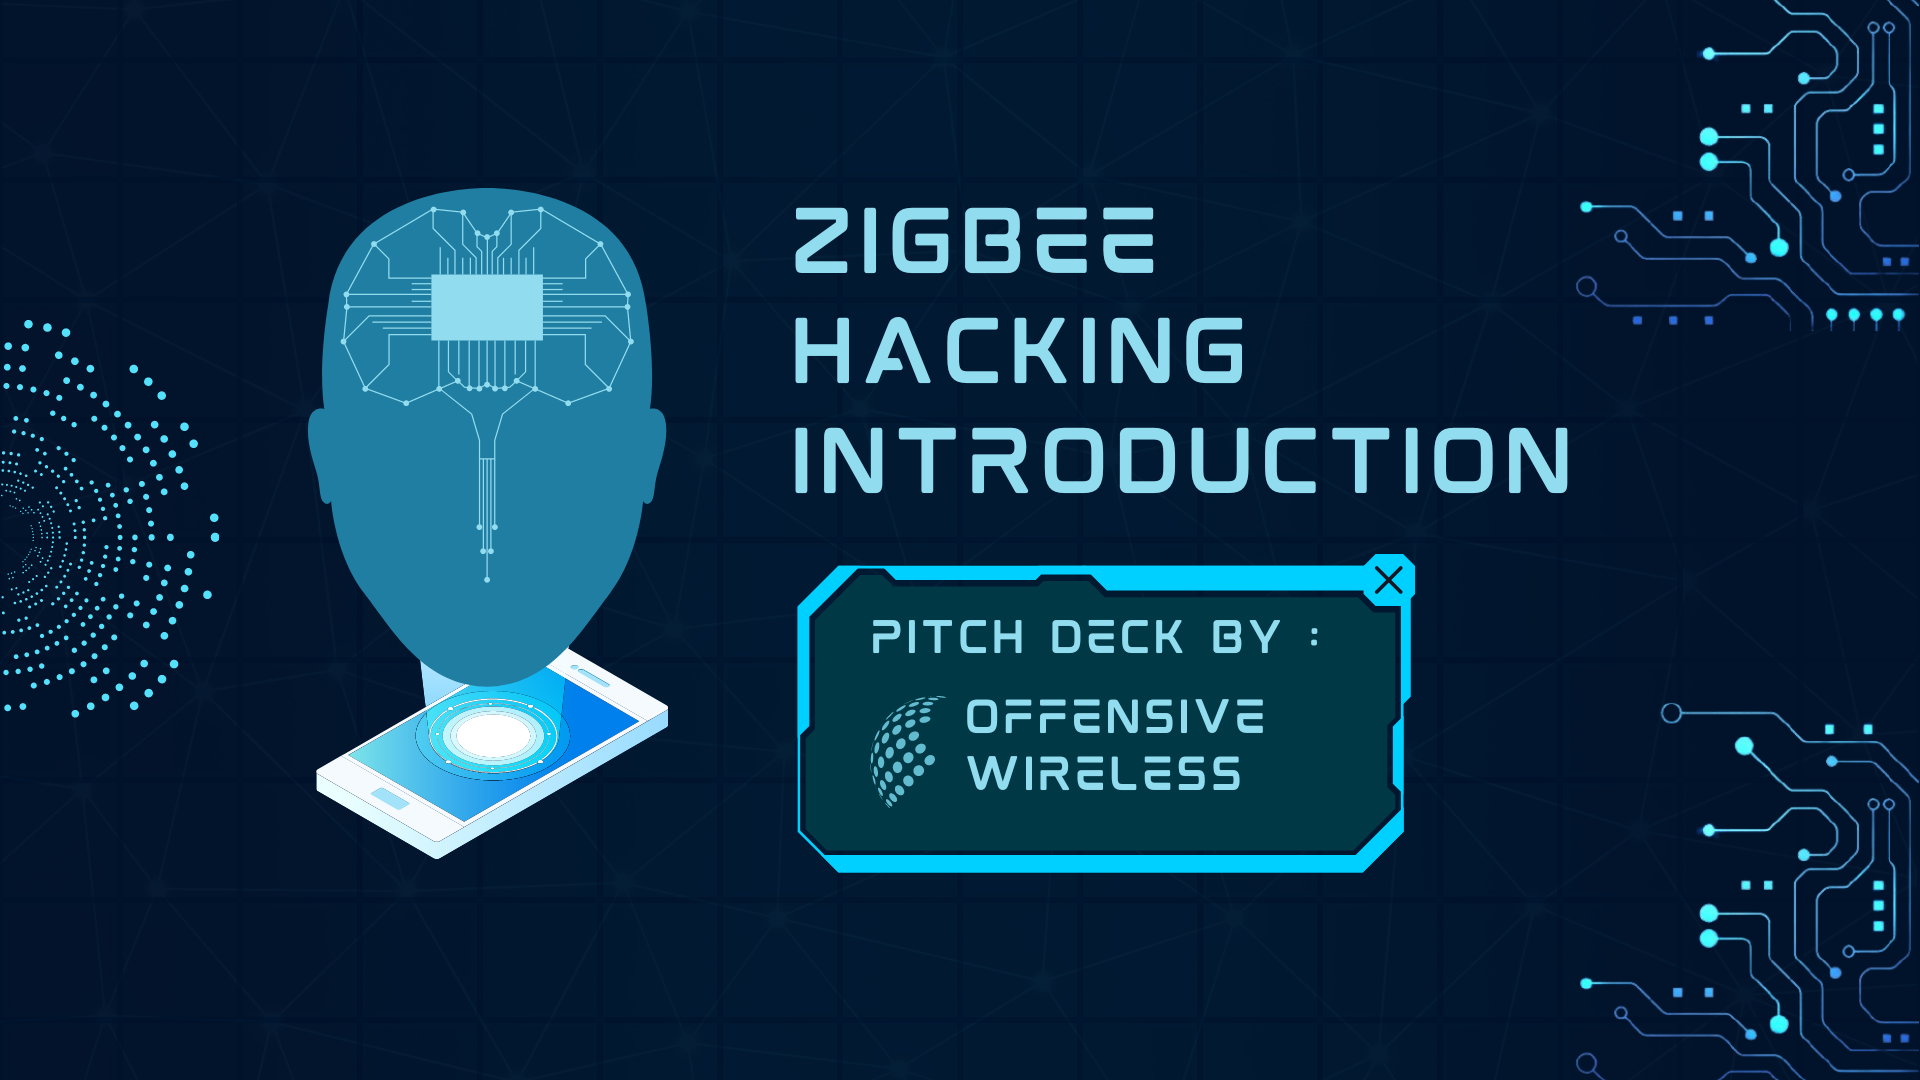 ZigBee Hacking Introduction